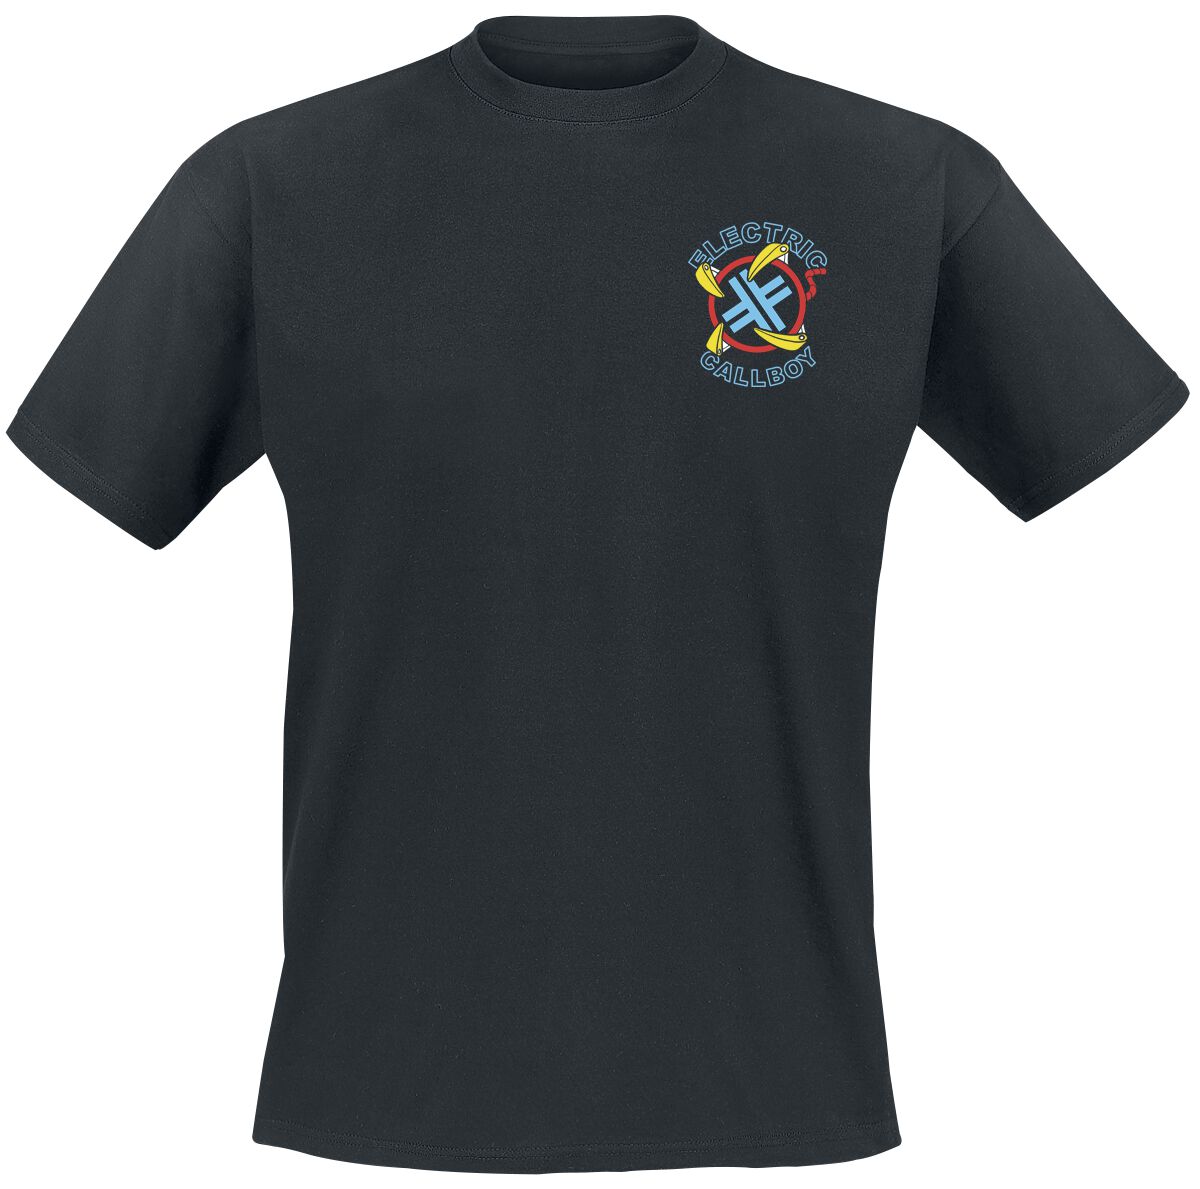 Electric Callboy T-Shirt - Let`s Play - S bis 3XL - für Männer - Größe L - schwarz  - Lizenziertes Merchandise!